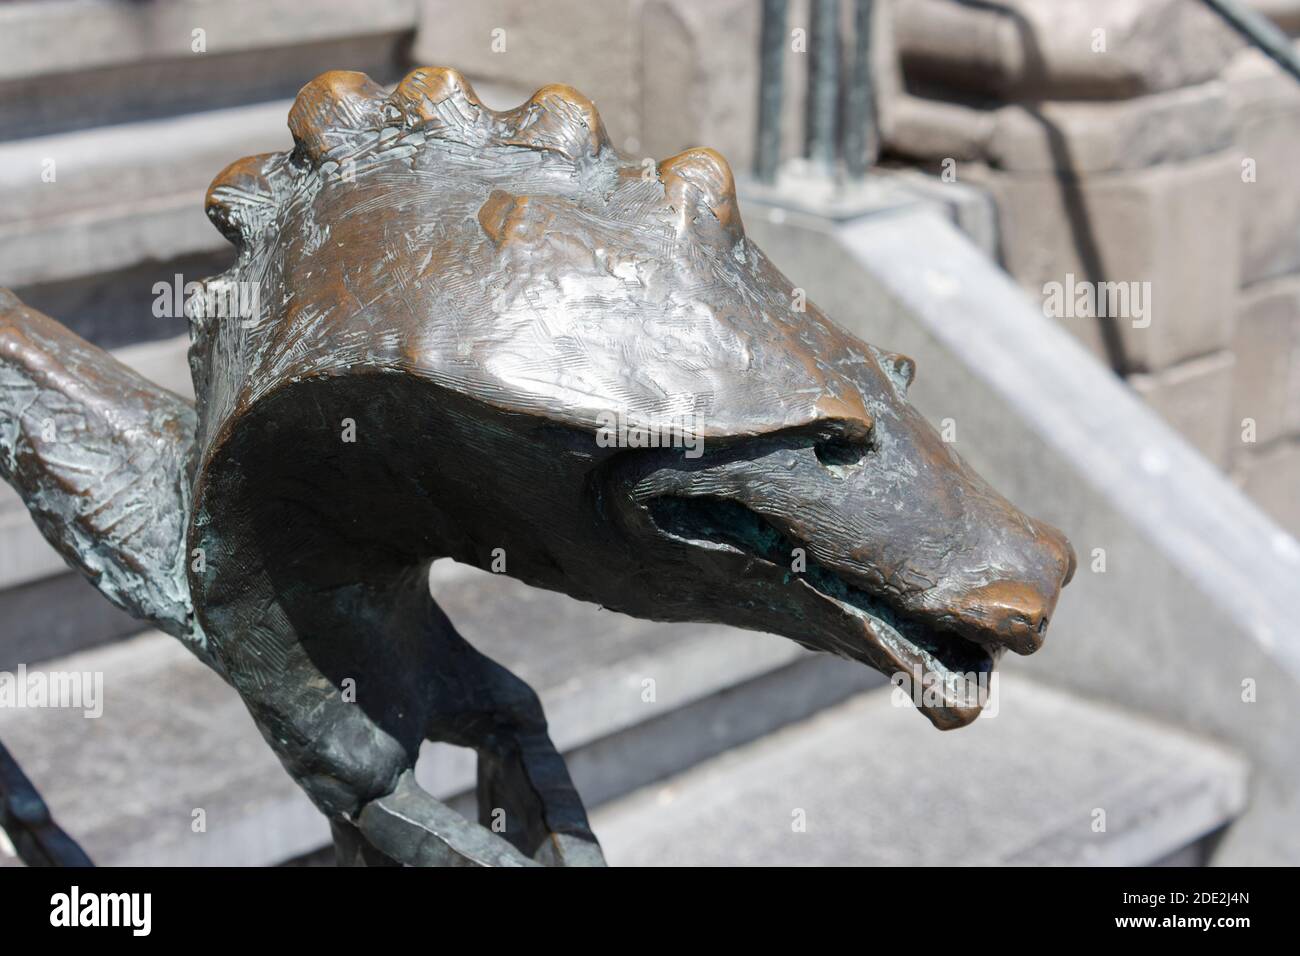 Barandilla de hierro con cabeza de serpiente, Mons, Bélgica Foto de stock